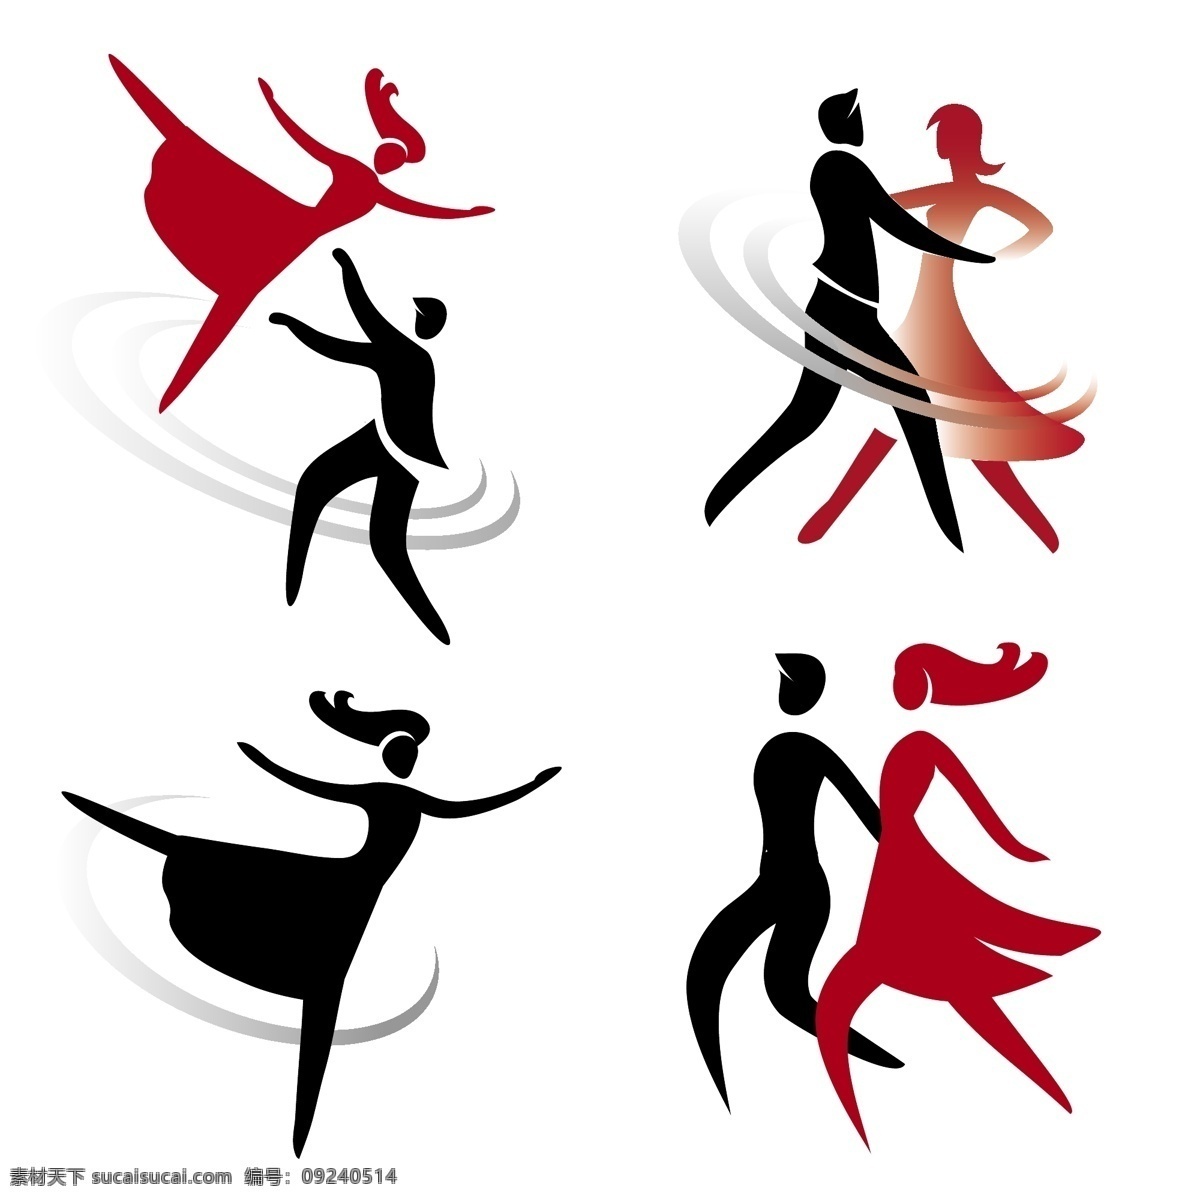 舞蹈 人物 剪影 矢量 矢量素材 人物剪影 交谊舞 跳舞 舞动 图标 标志 标签 logo 小图标 标识标志图标